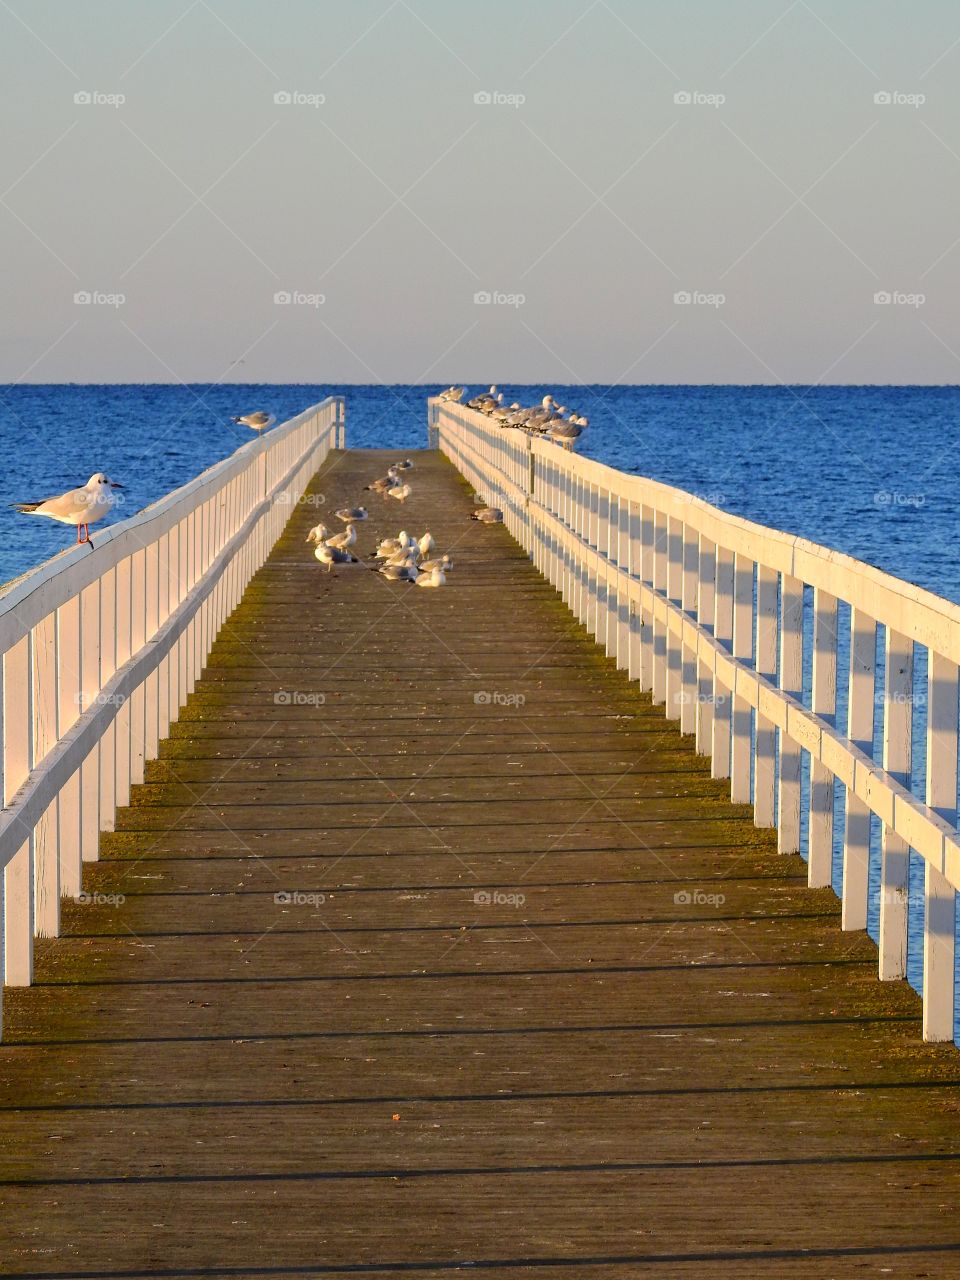 Seagulls on a jetty rail